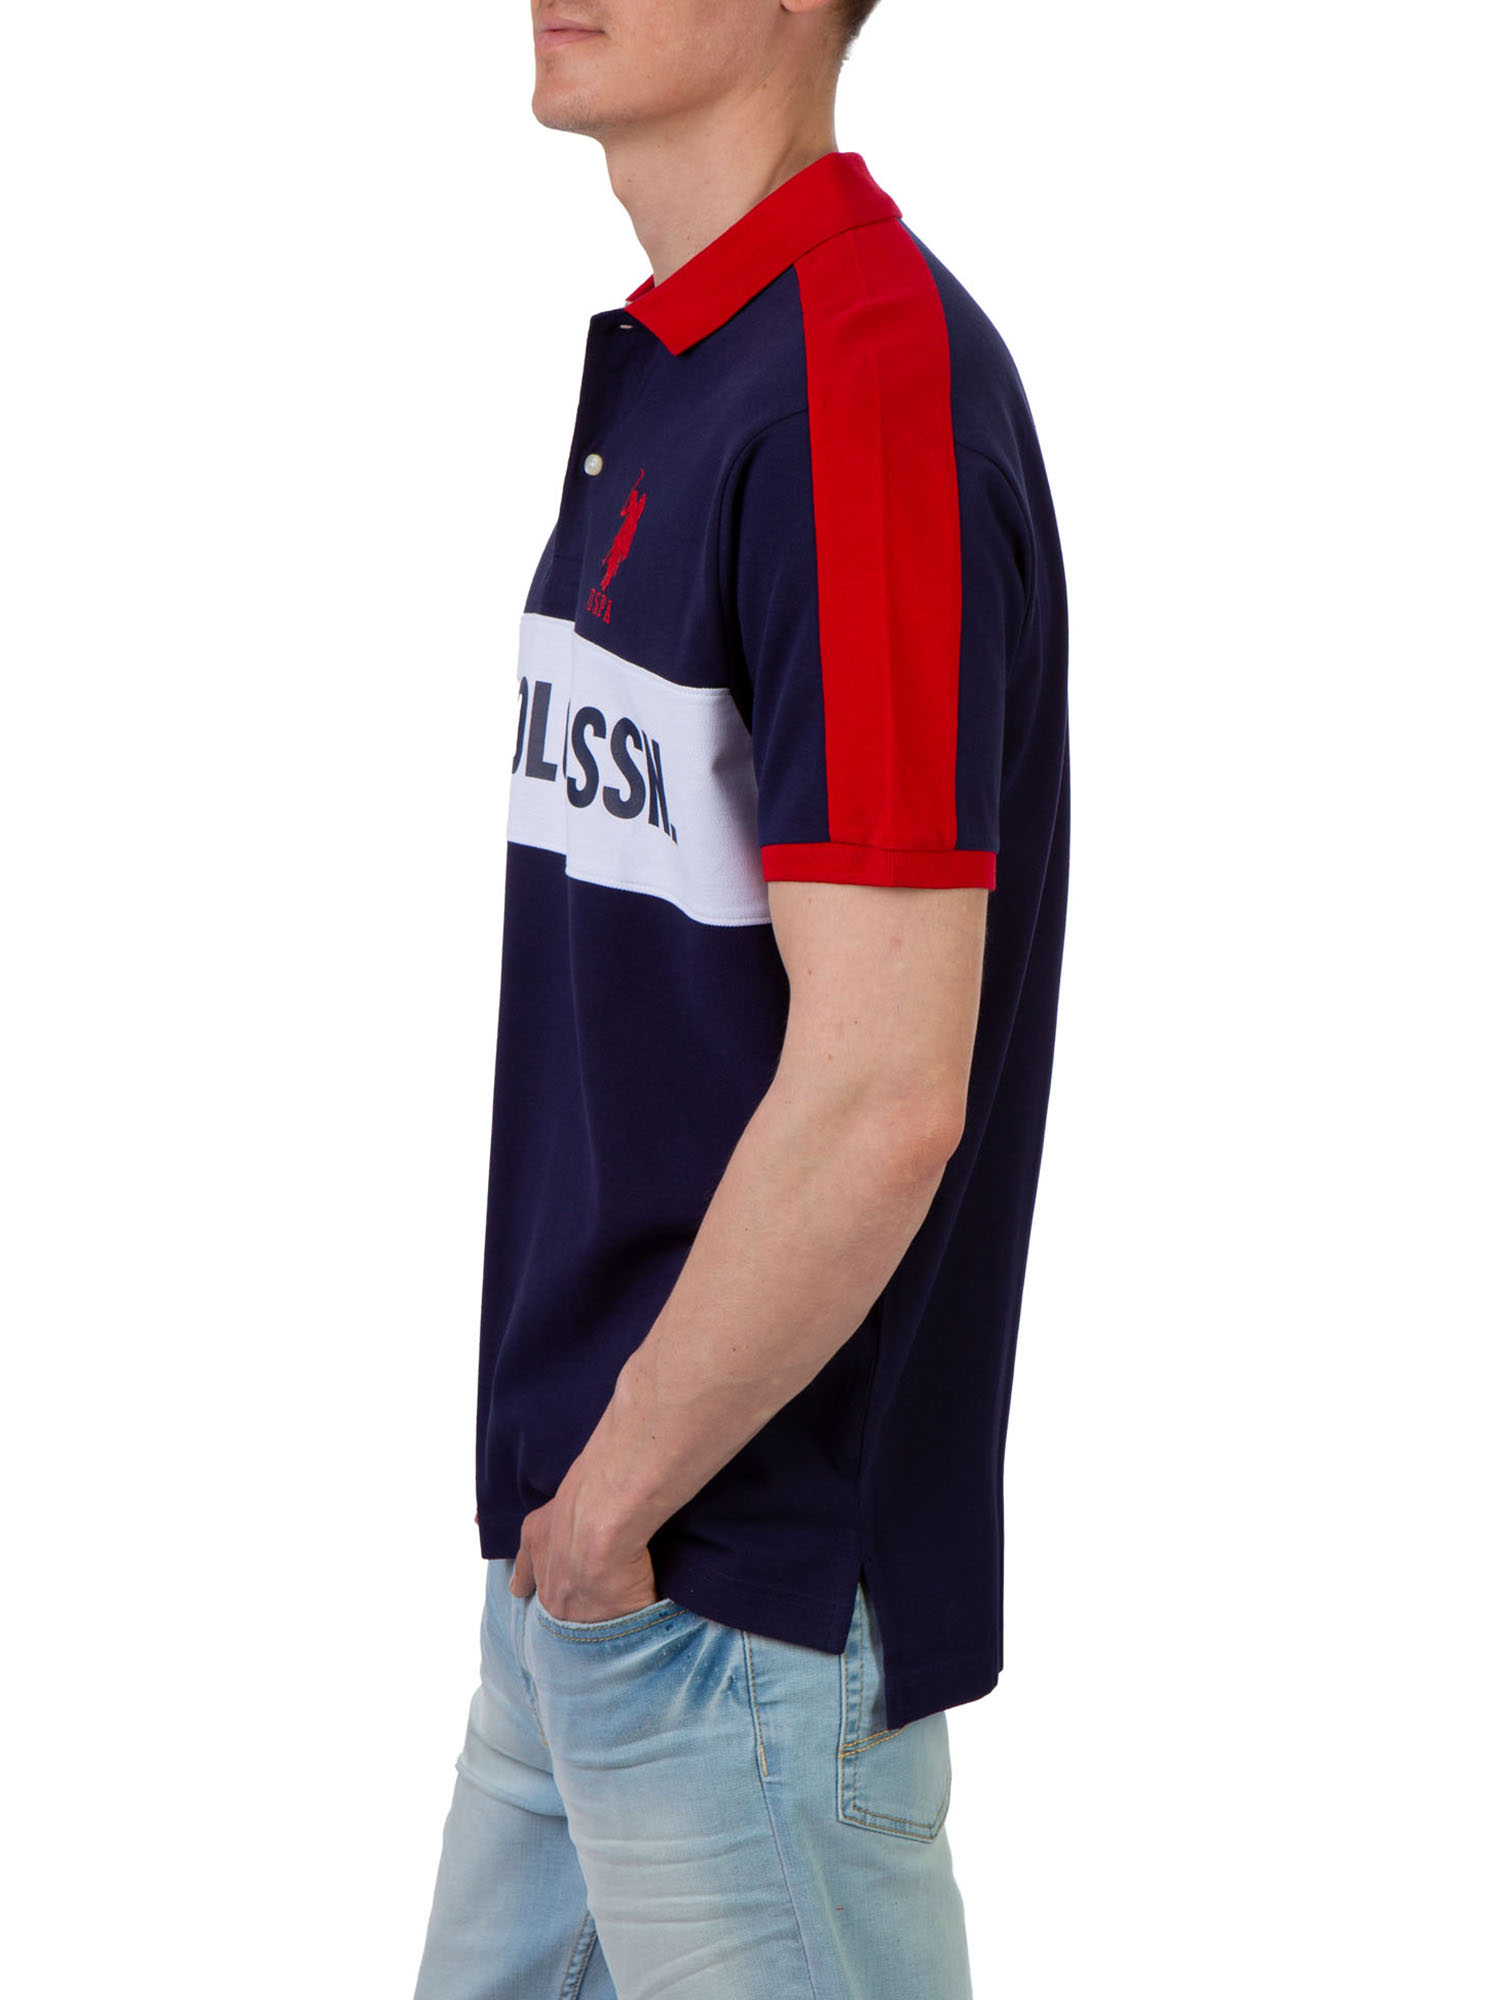 U.S. Polo Assn. Men's Color Block Pique Polo Shirt - image 2 of 3